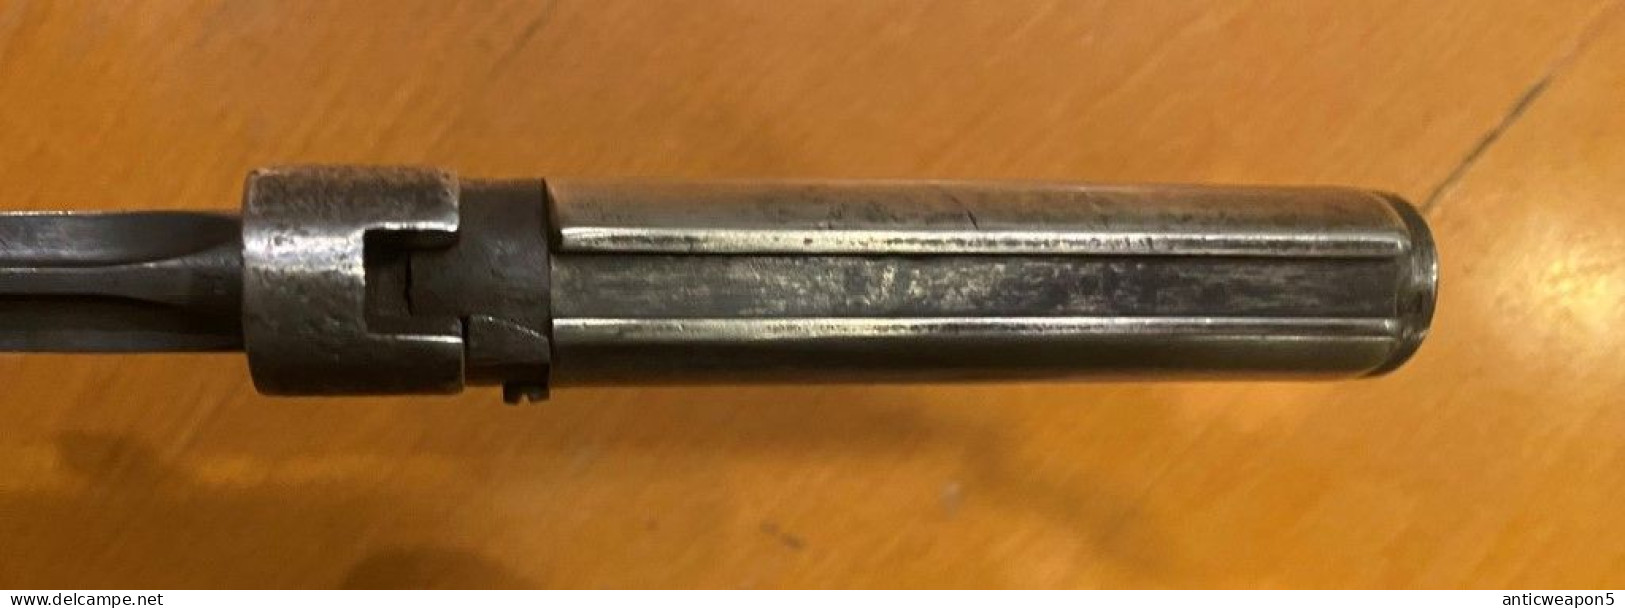 Baïonnette pour fusil Lebel type 1. France. M1886 (267)